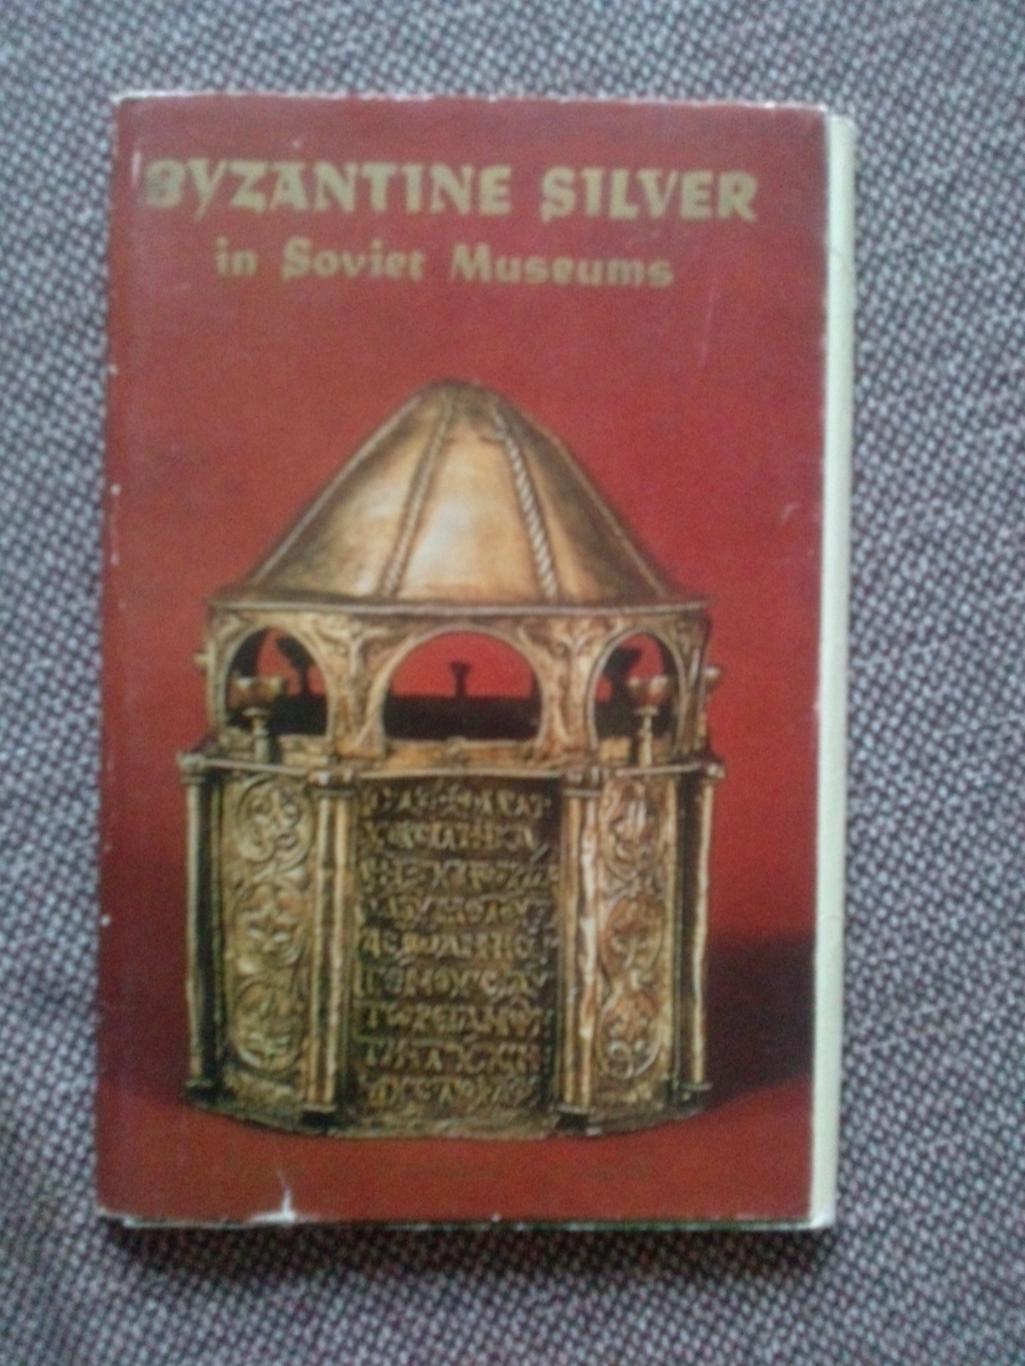 Византийское серебро в музеях СССР 1981 г. полный набор - 16 открыток (чистые)